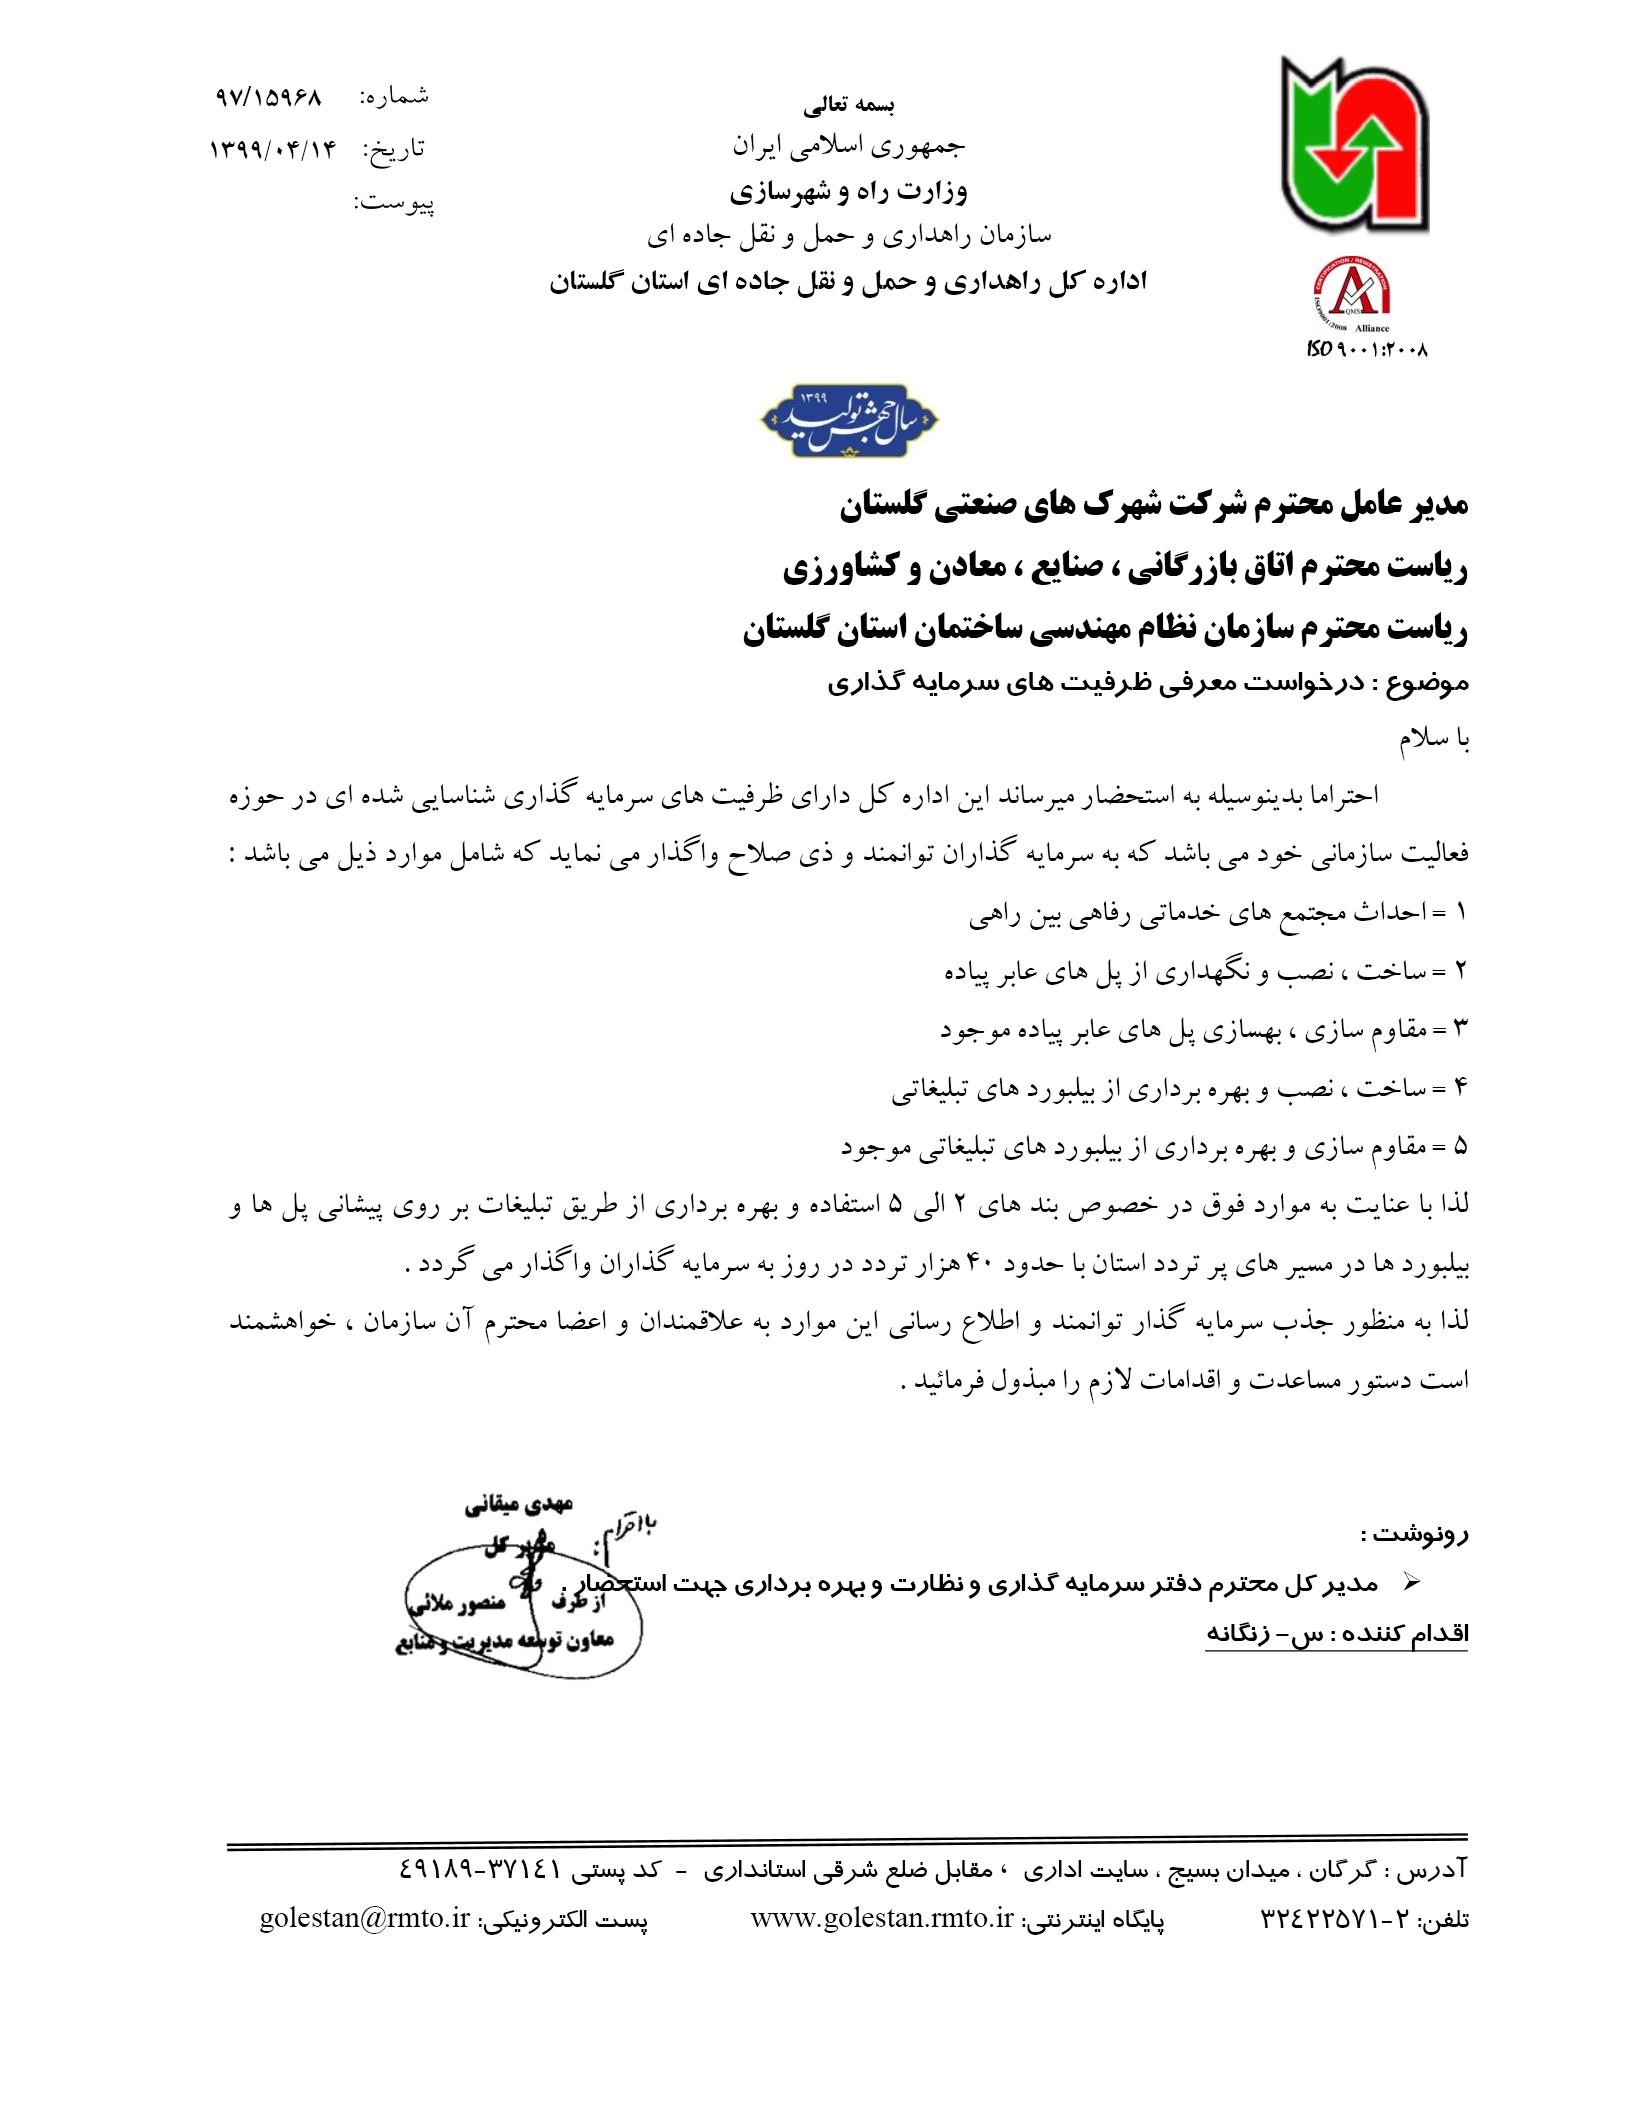 ظرفیت های سرمایه گذاری اداره کل راهداری و حمل و نقل جاده ای استان گلستان